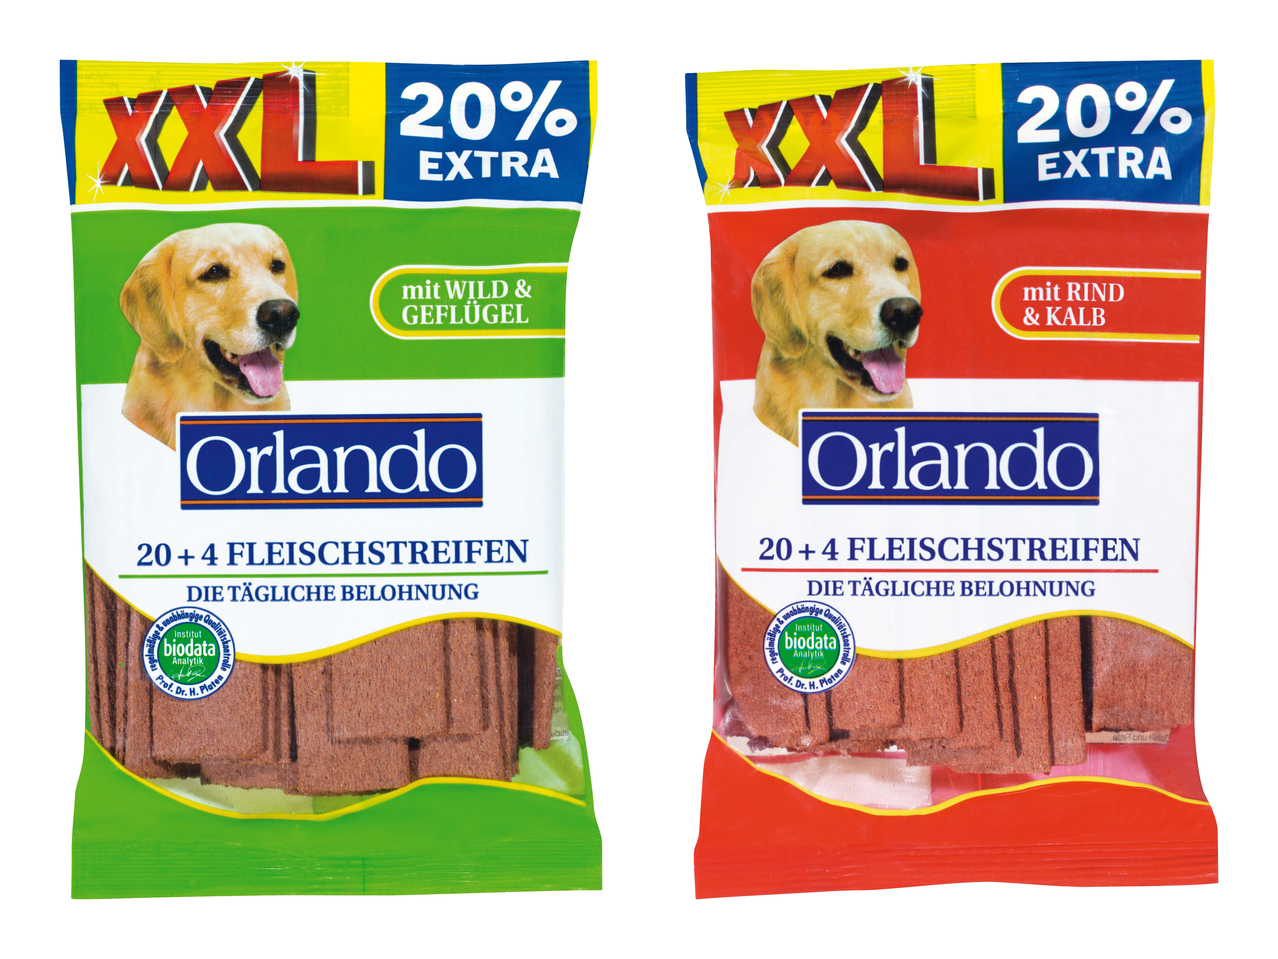 Striscette di carne per cane XXL